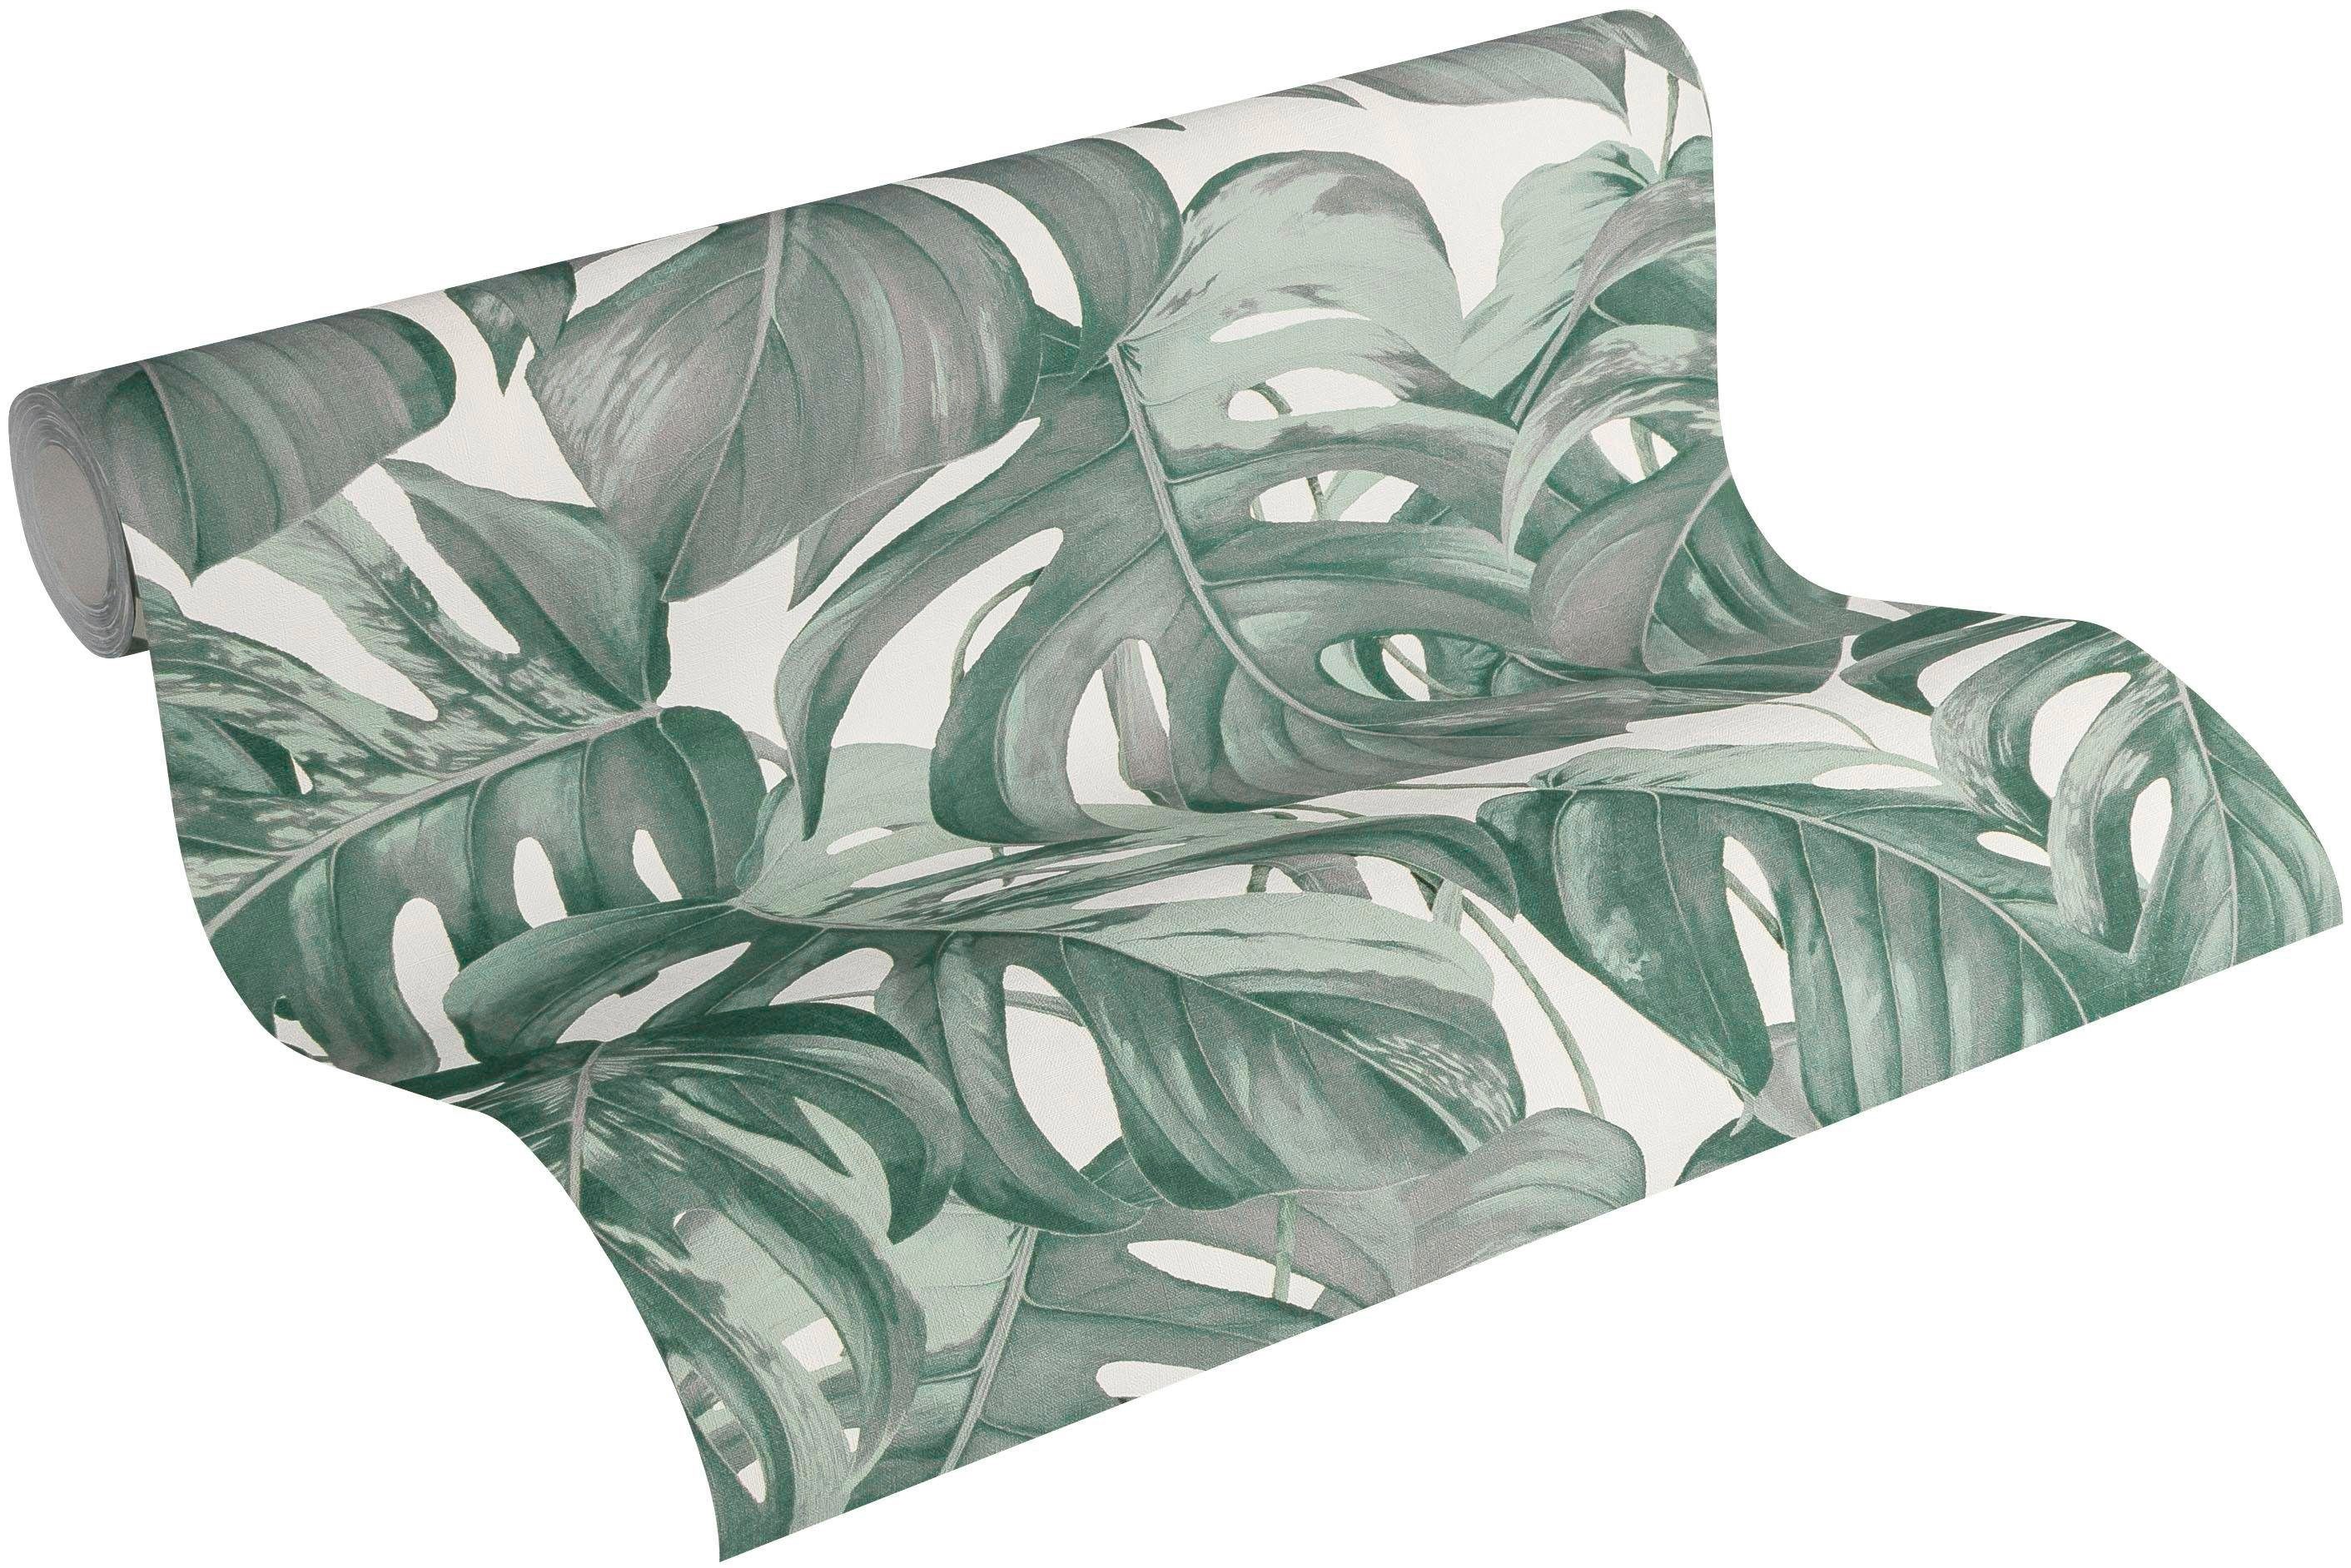 Vliestapete A.S. METROPOLIS Again, Création grün/weiß Designer botanisch, LIVING Dream BY tropisch, Modern Tapete MICHALSKY